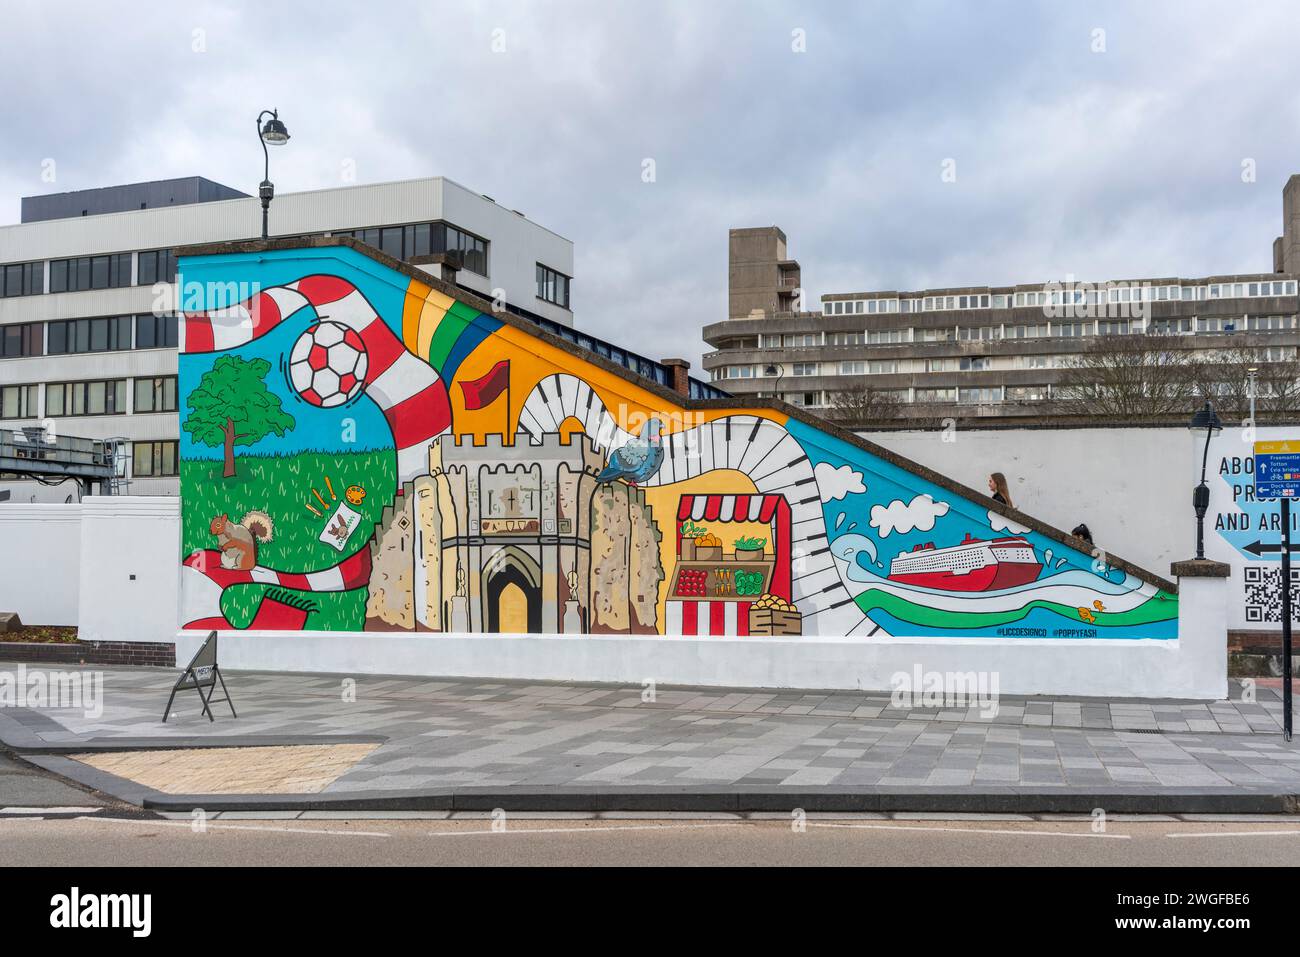 Arte vivace, progettata dall'artista locale Poppy Nash sulla parete di un ponte pedonale sul lato sud della stazione centrale di Southampton, Inghilterra, Regno Unito Foto Stock